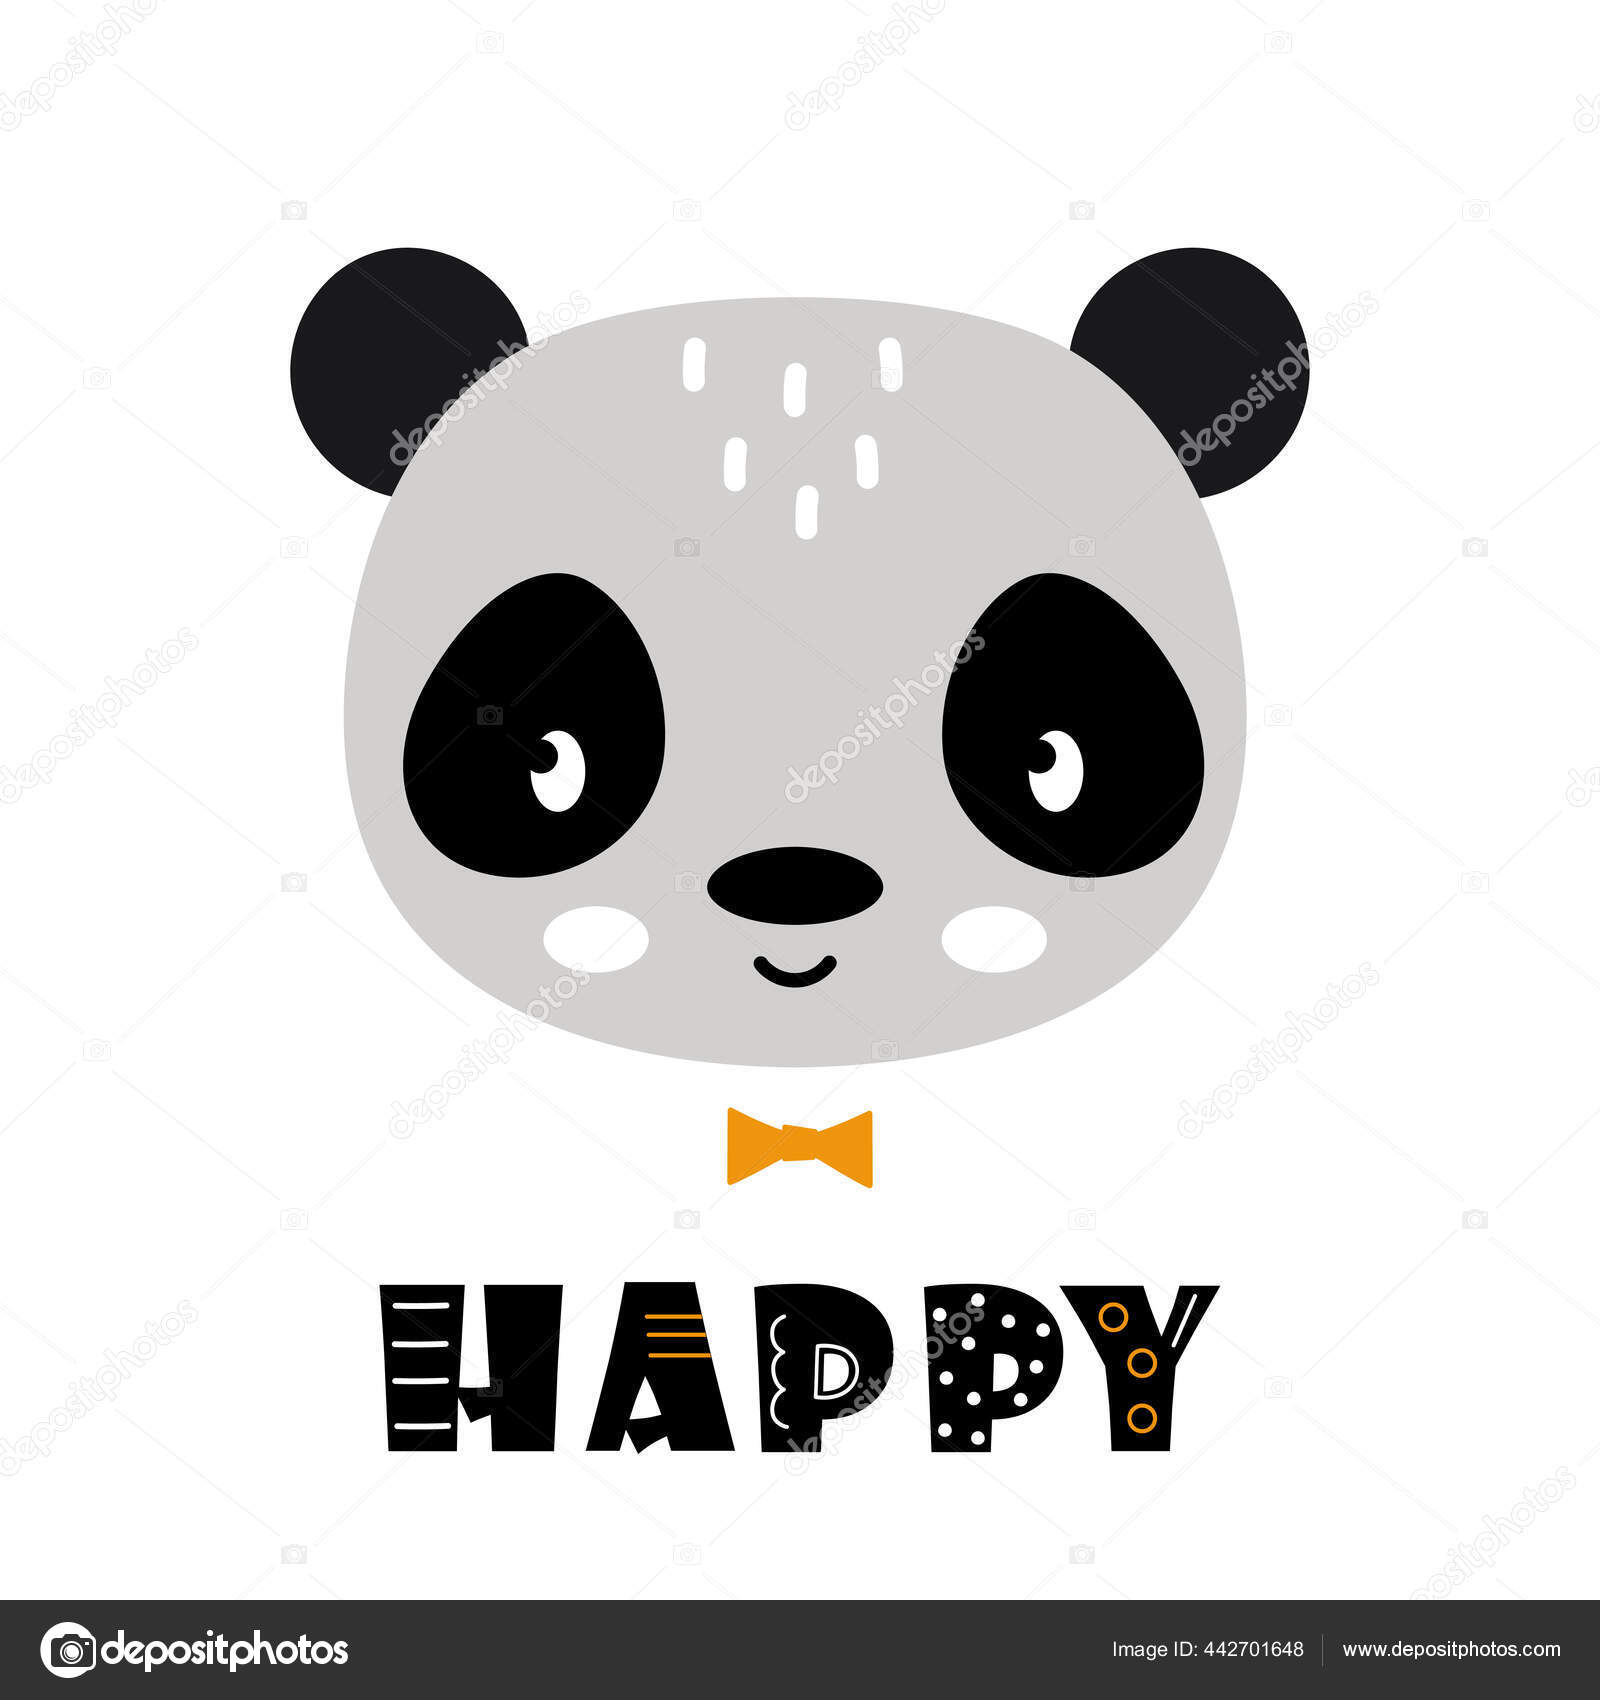 Gambar Vektor Wajah Panda Lucu Wajah Panda Dan Teks Bahagia Stok Vektor Makc76 442701648